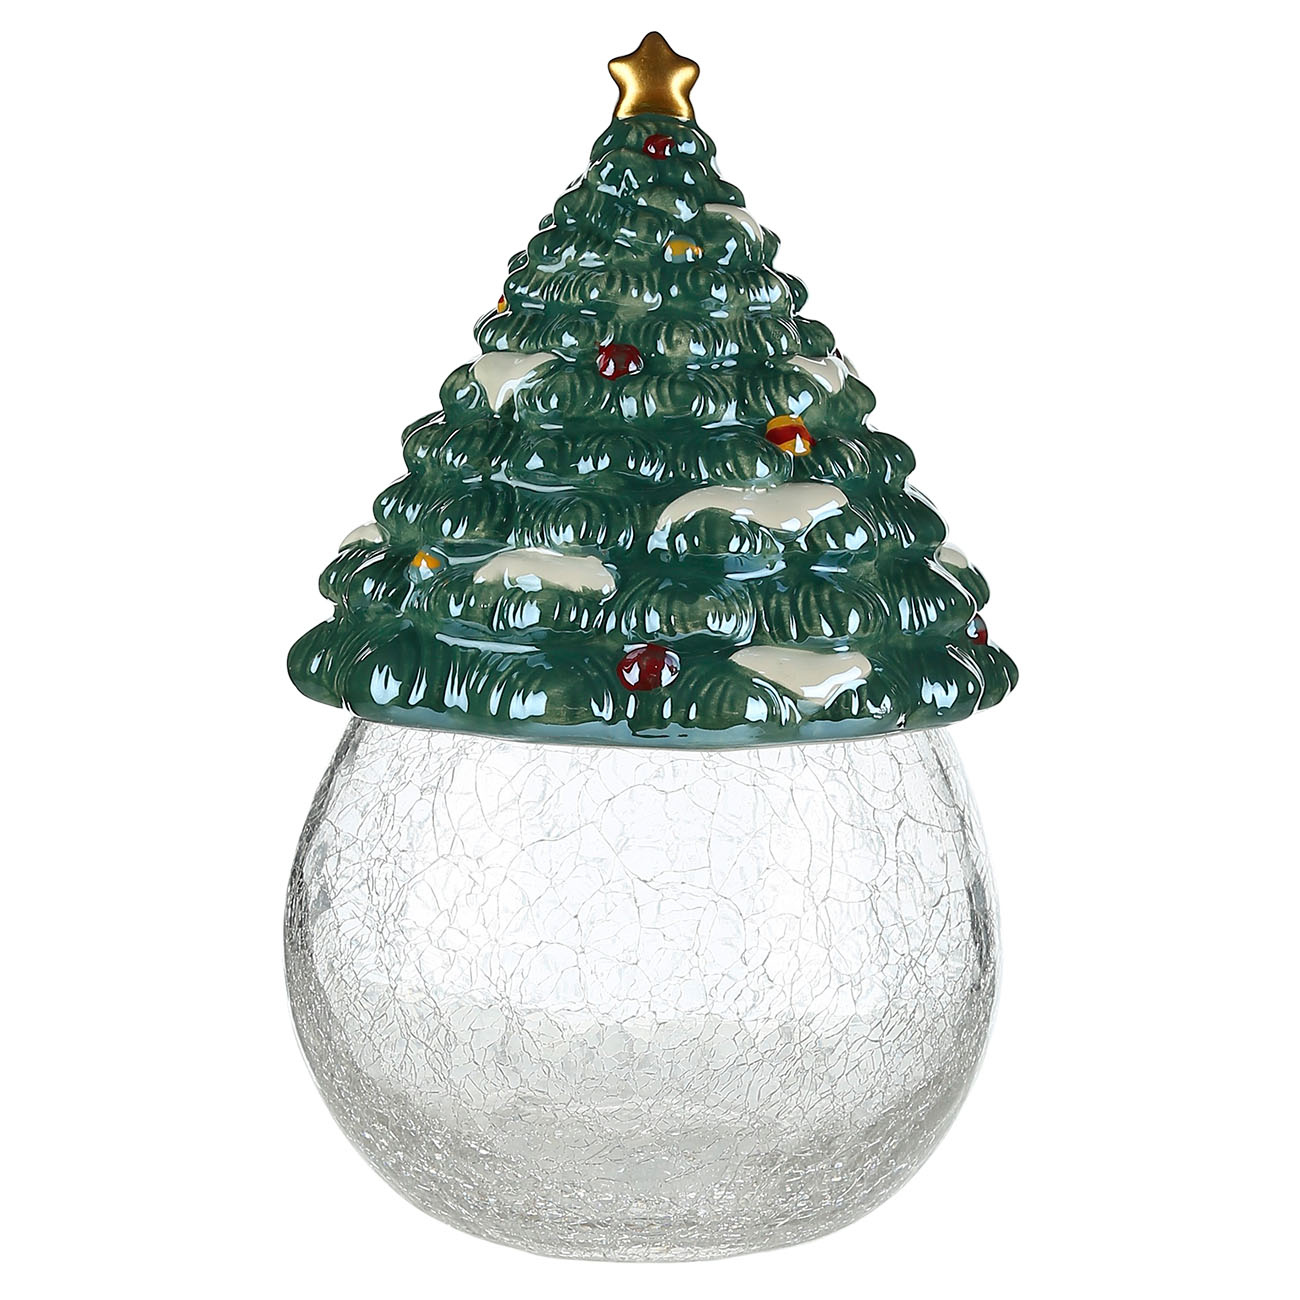 Конфетница, 25,5 см, керамика/стекло, зеленая, Елка со звездой, Christmas glaze - фото 1